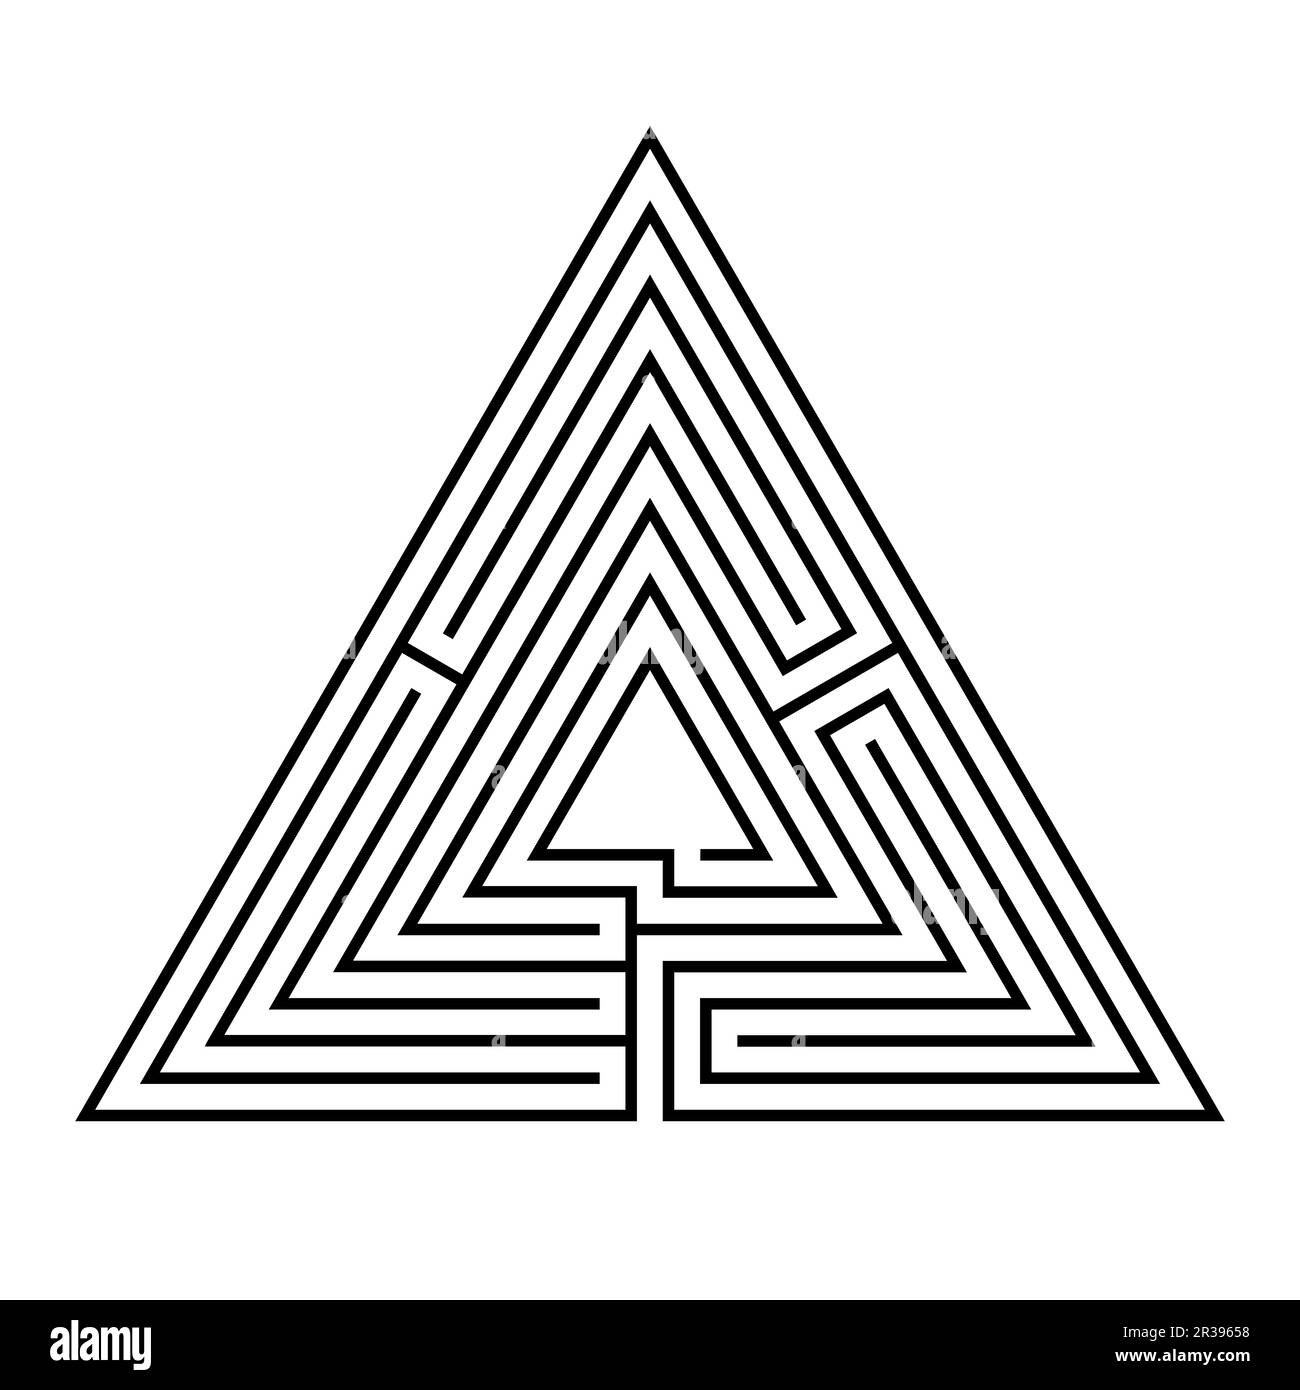 Labyrinthe triangulaire, un labyrinthe avec un seul chemin (unifursal) de l'entrée au centre ou but, en sept cours. Banque D'Images